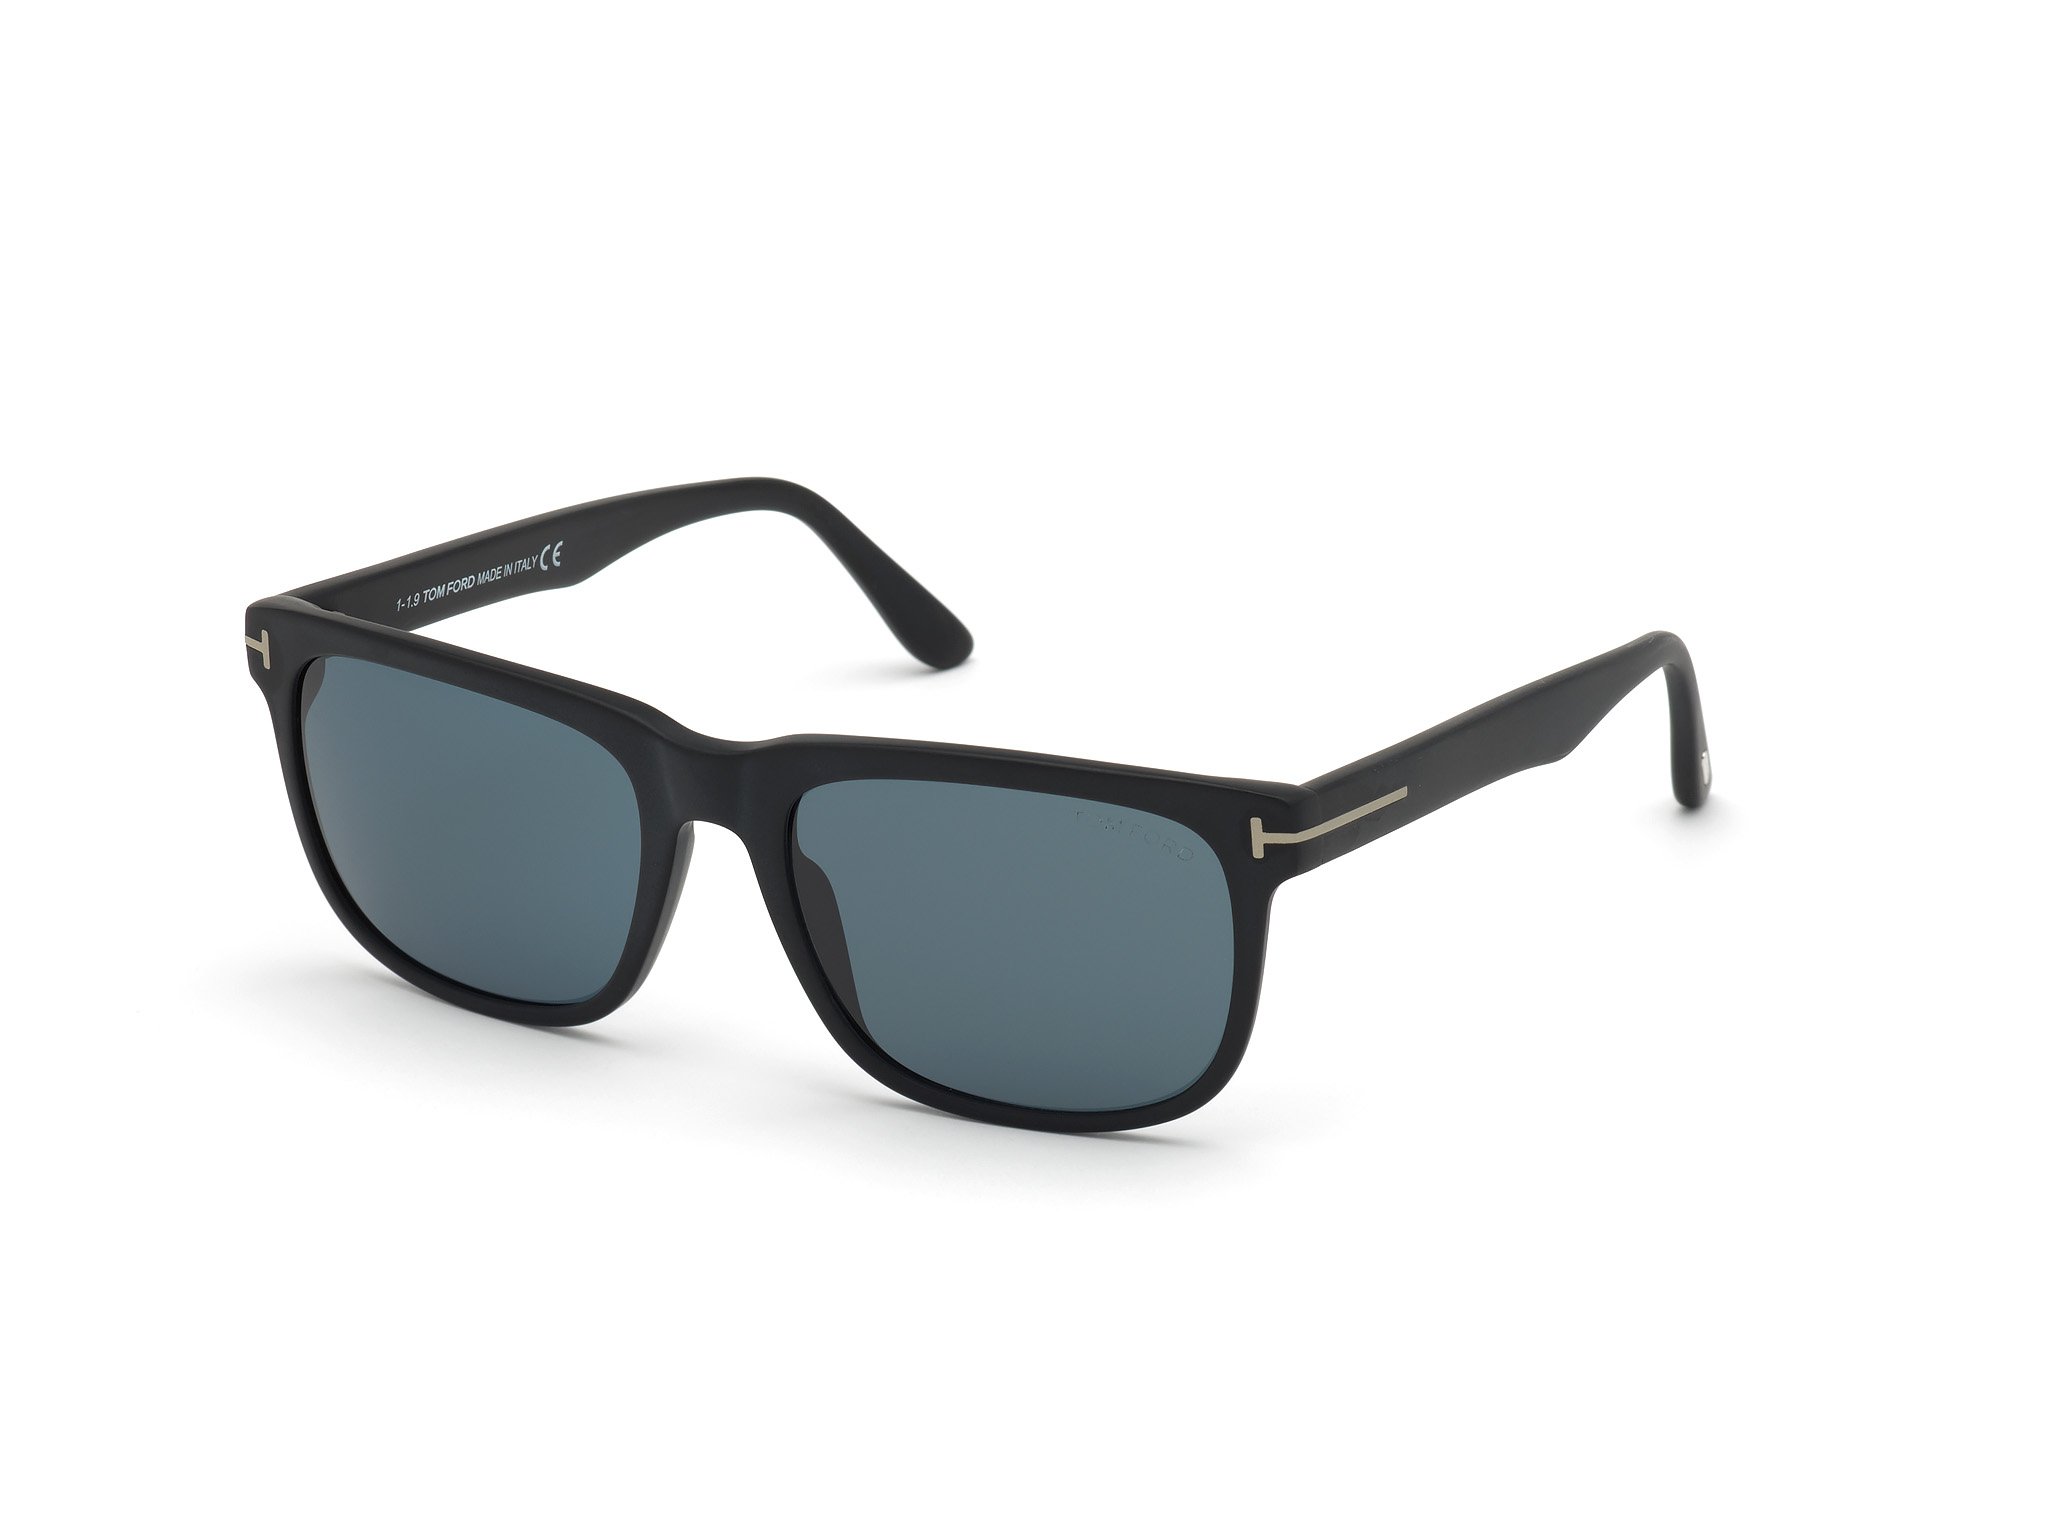 Das Bild zeigt die Sonnenbrille STEPHENSON FT0775 von der Marke Tom Ford in schwarz